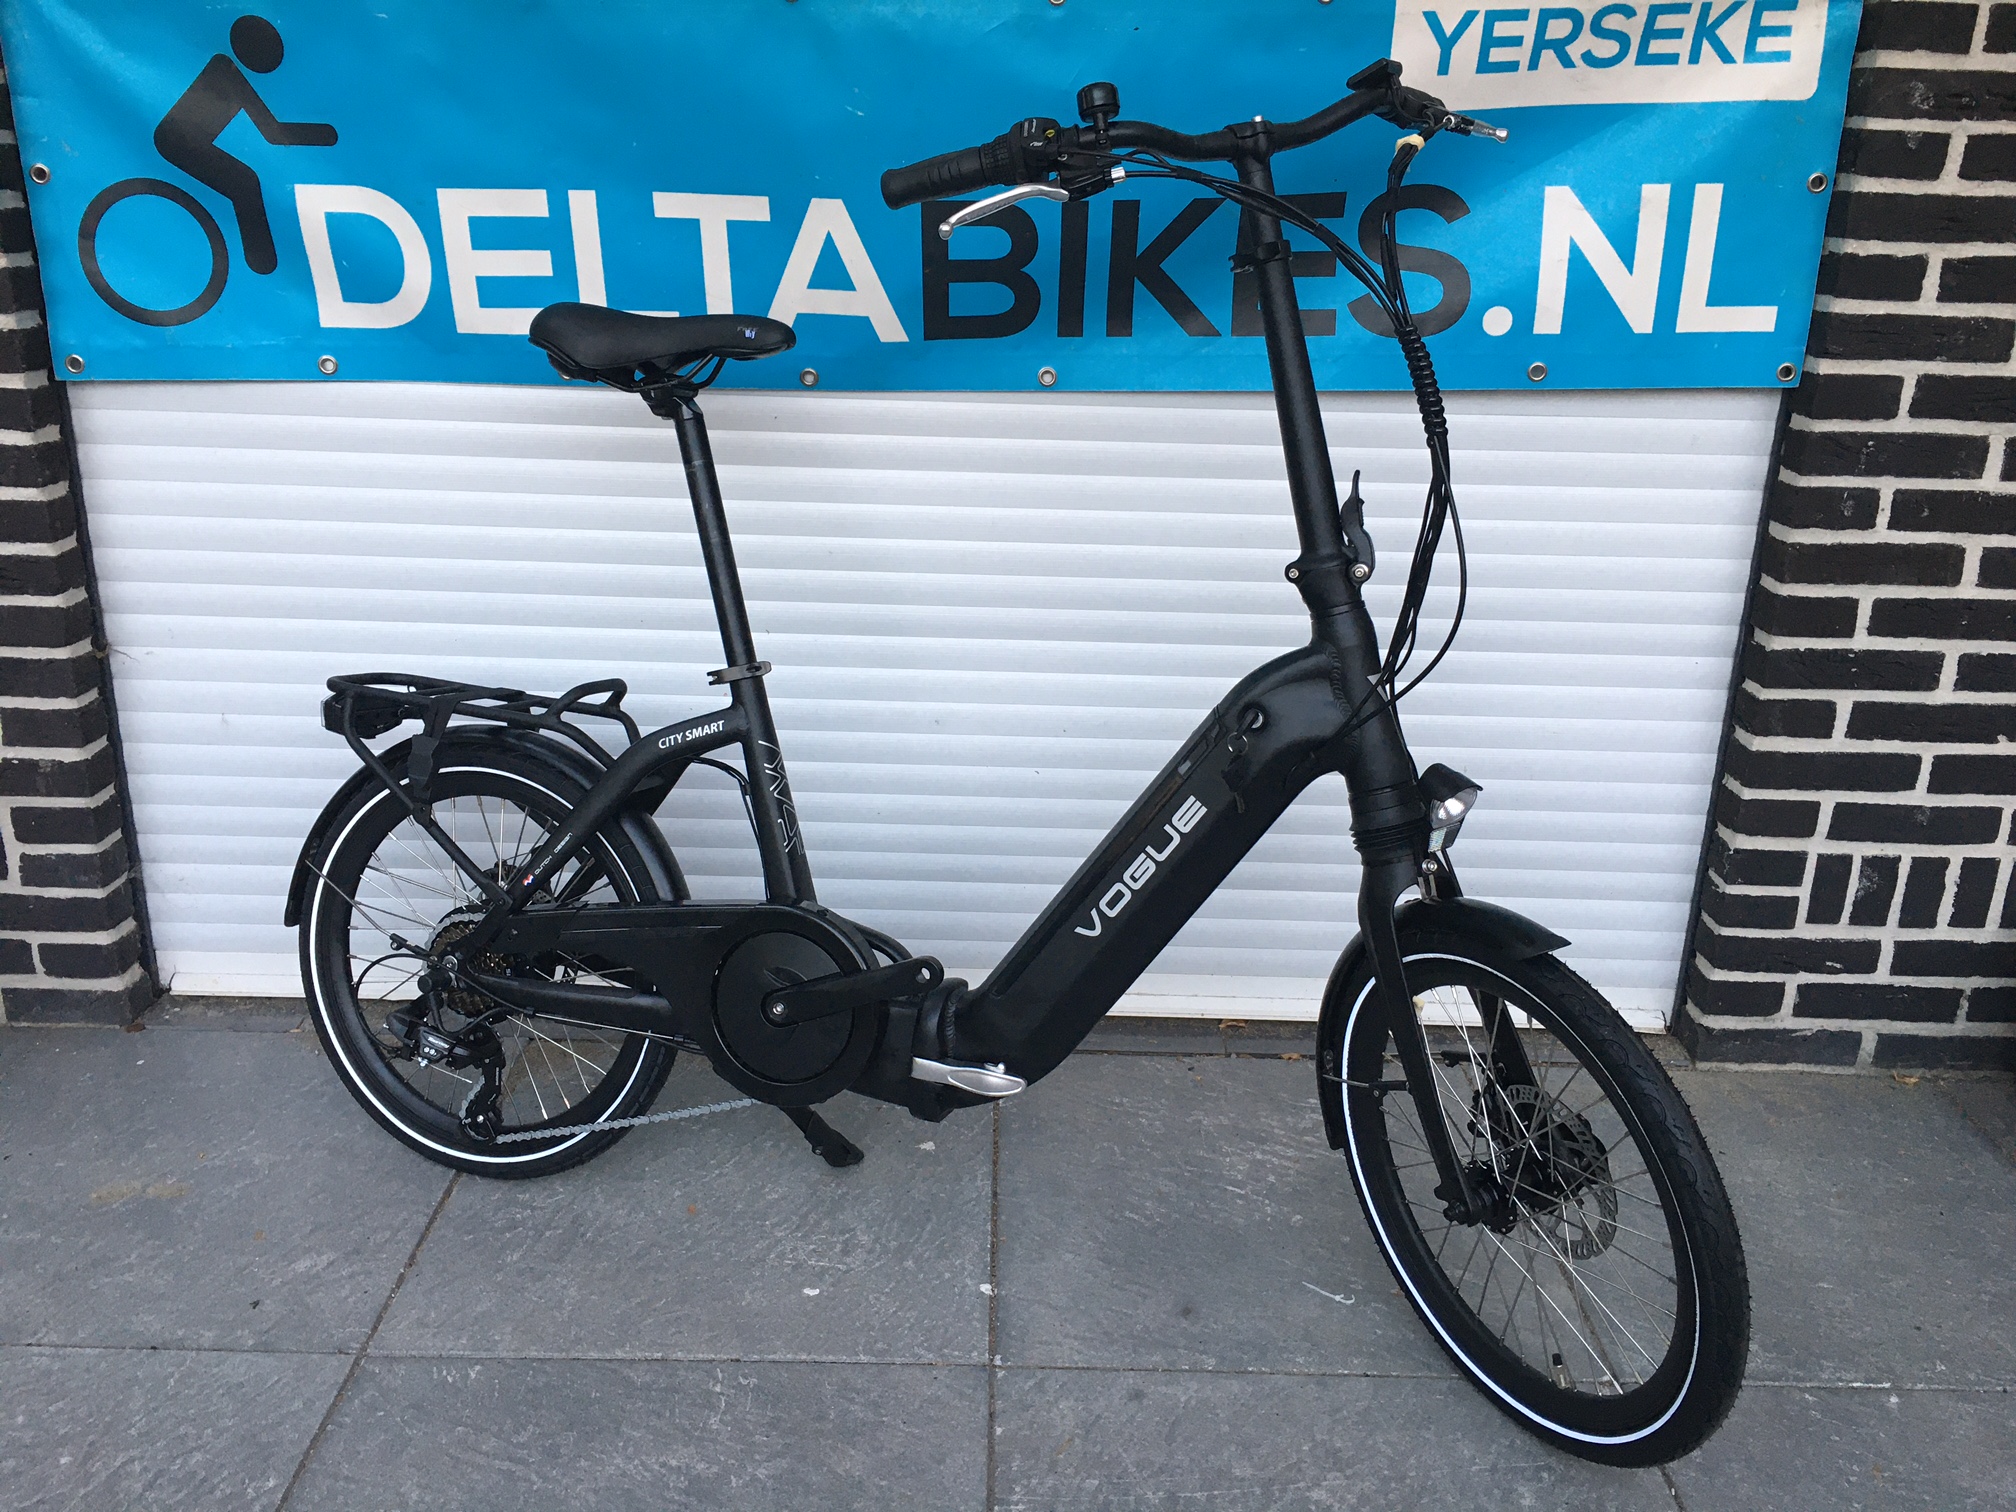 Abnormaal Het formulier Laat je zien Vogue City Smart E-bike Vouwfiets NEW Model - Delta Bikes